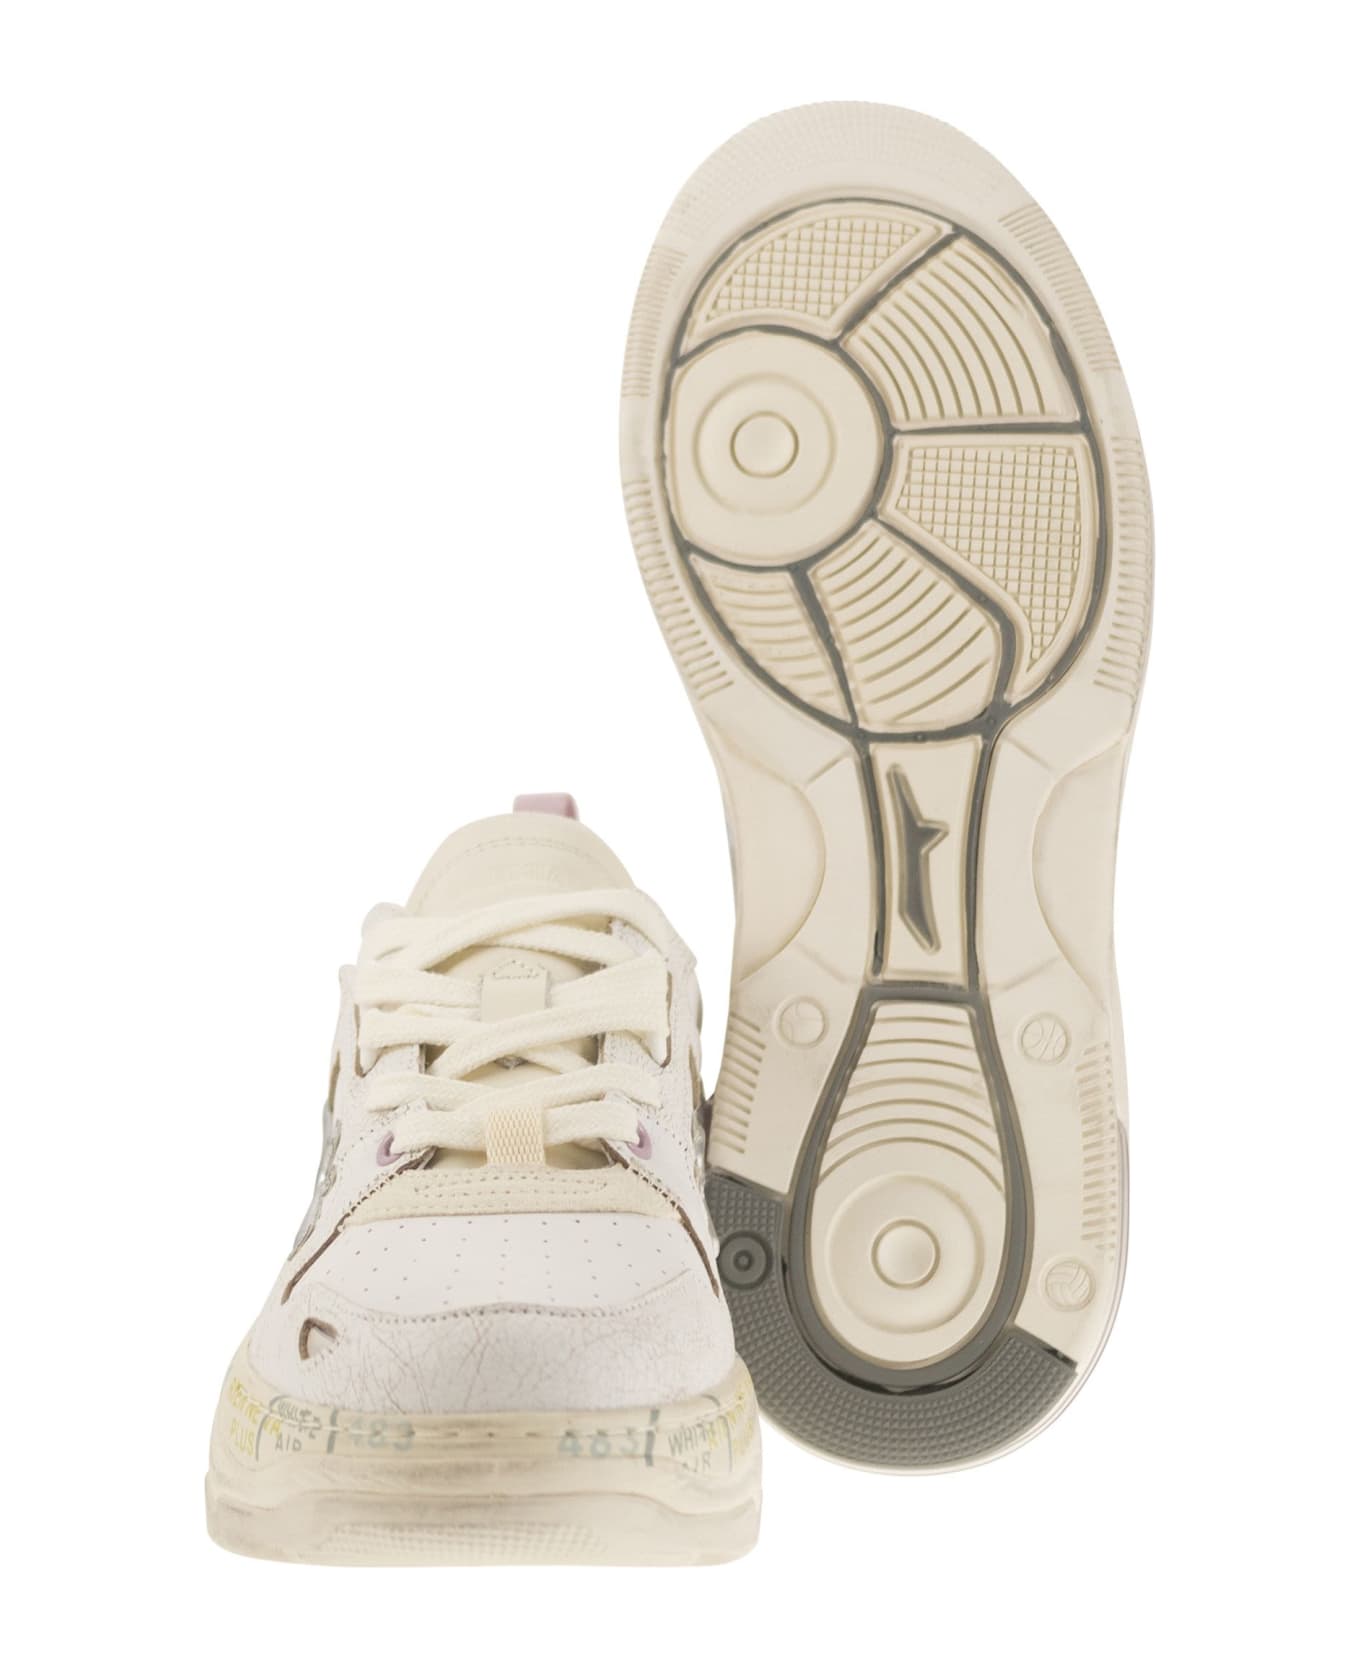 Premiata 'draked' White Leather Sneakers - White スニーカー